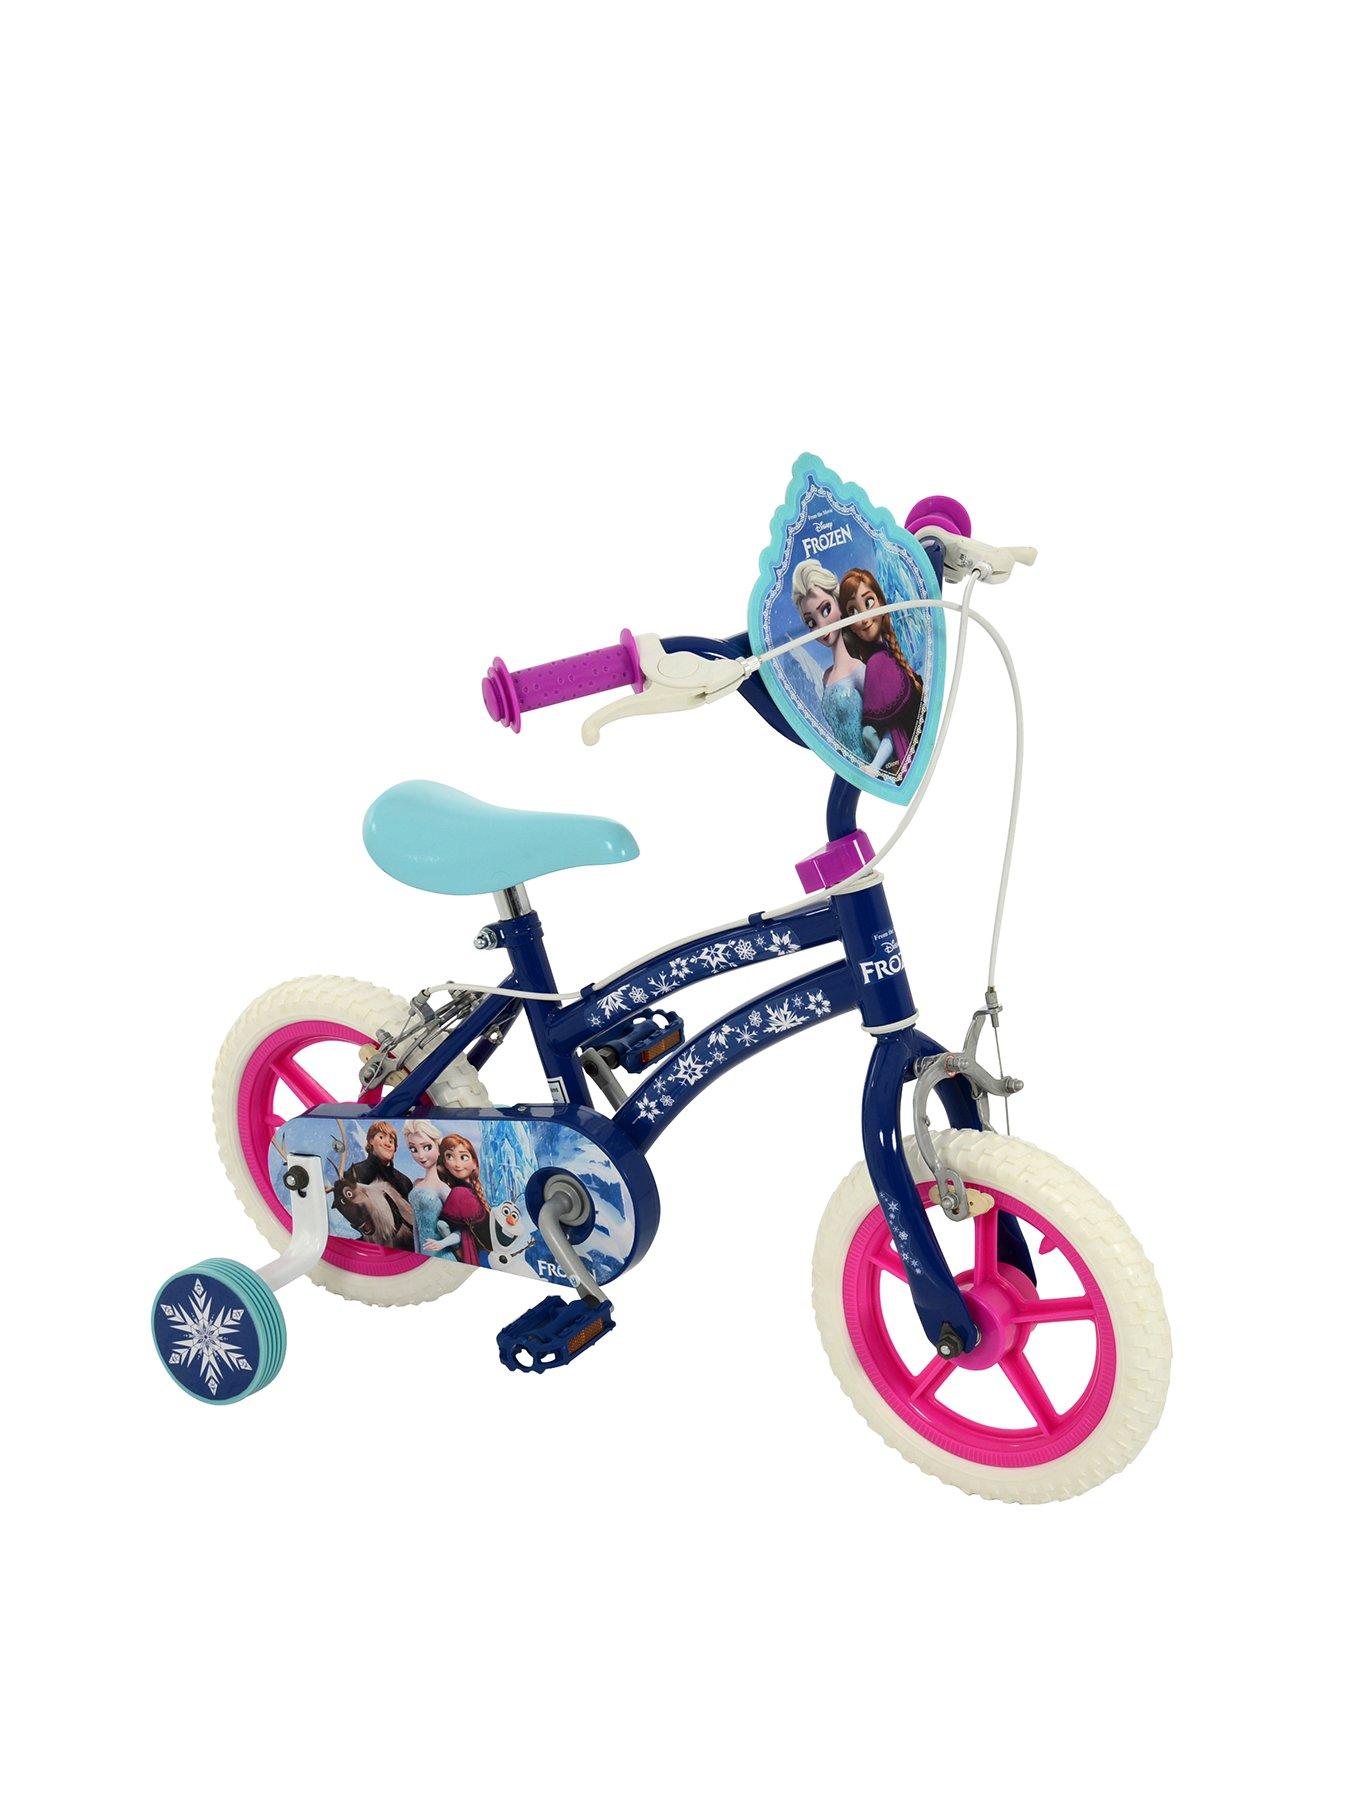 children's bikes ireland